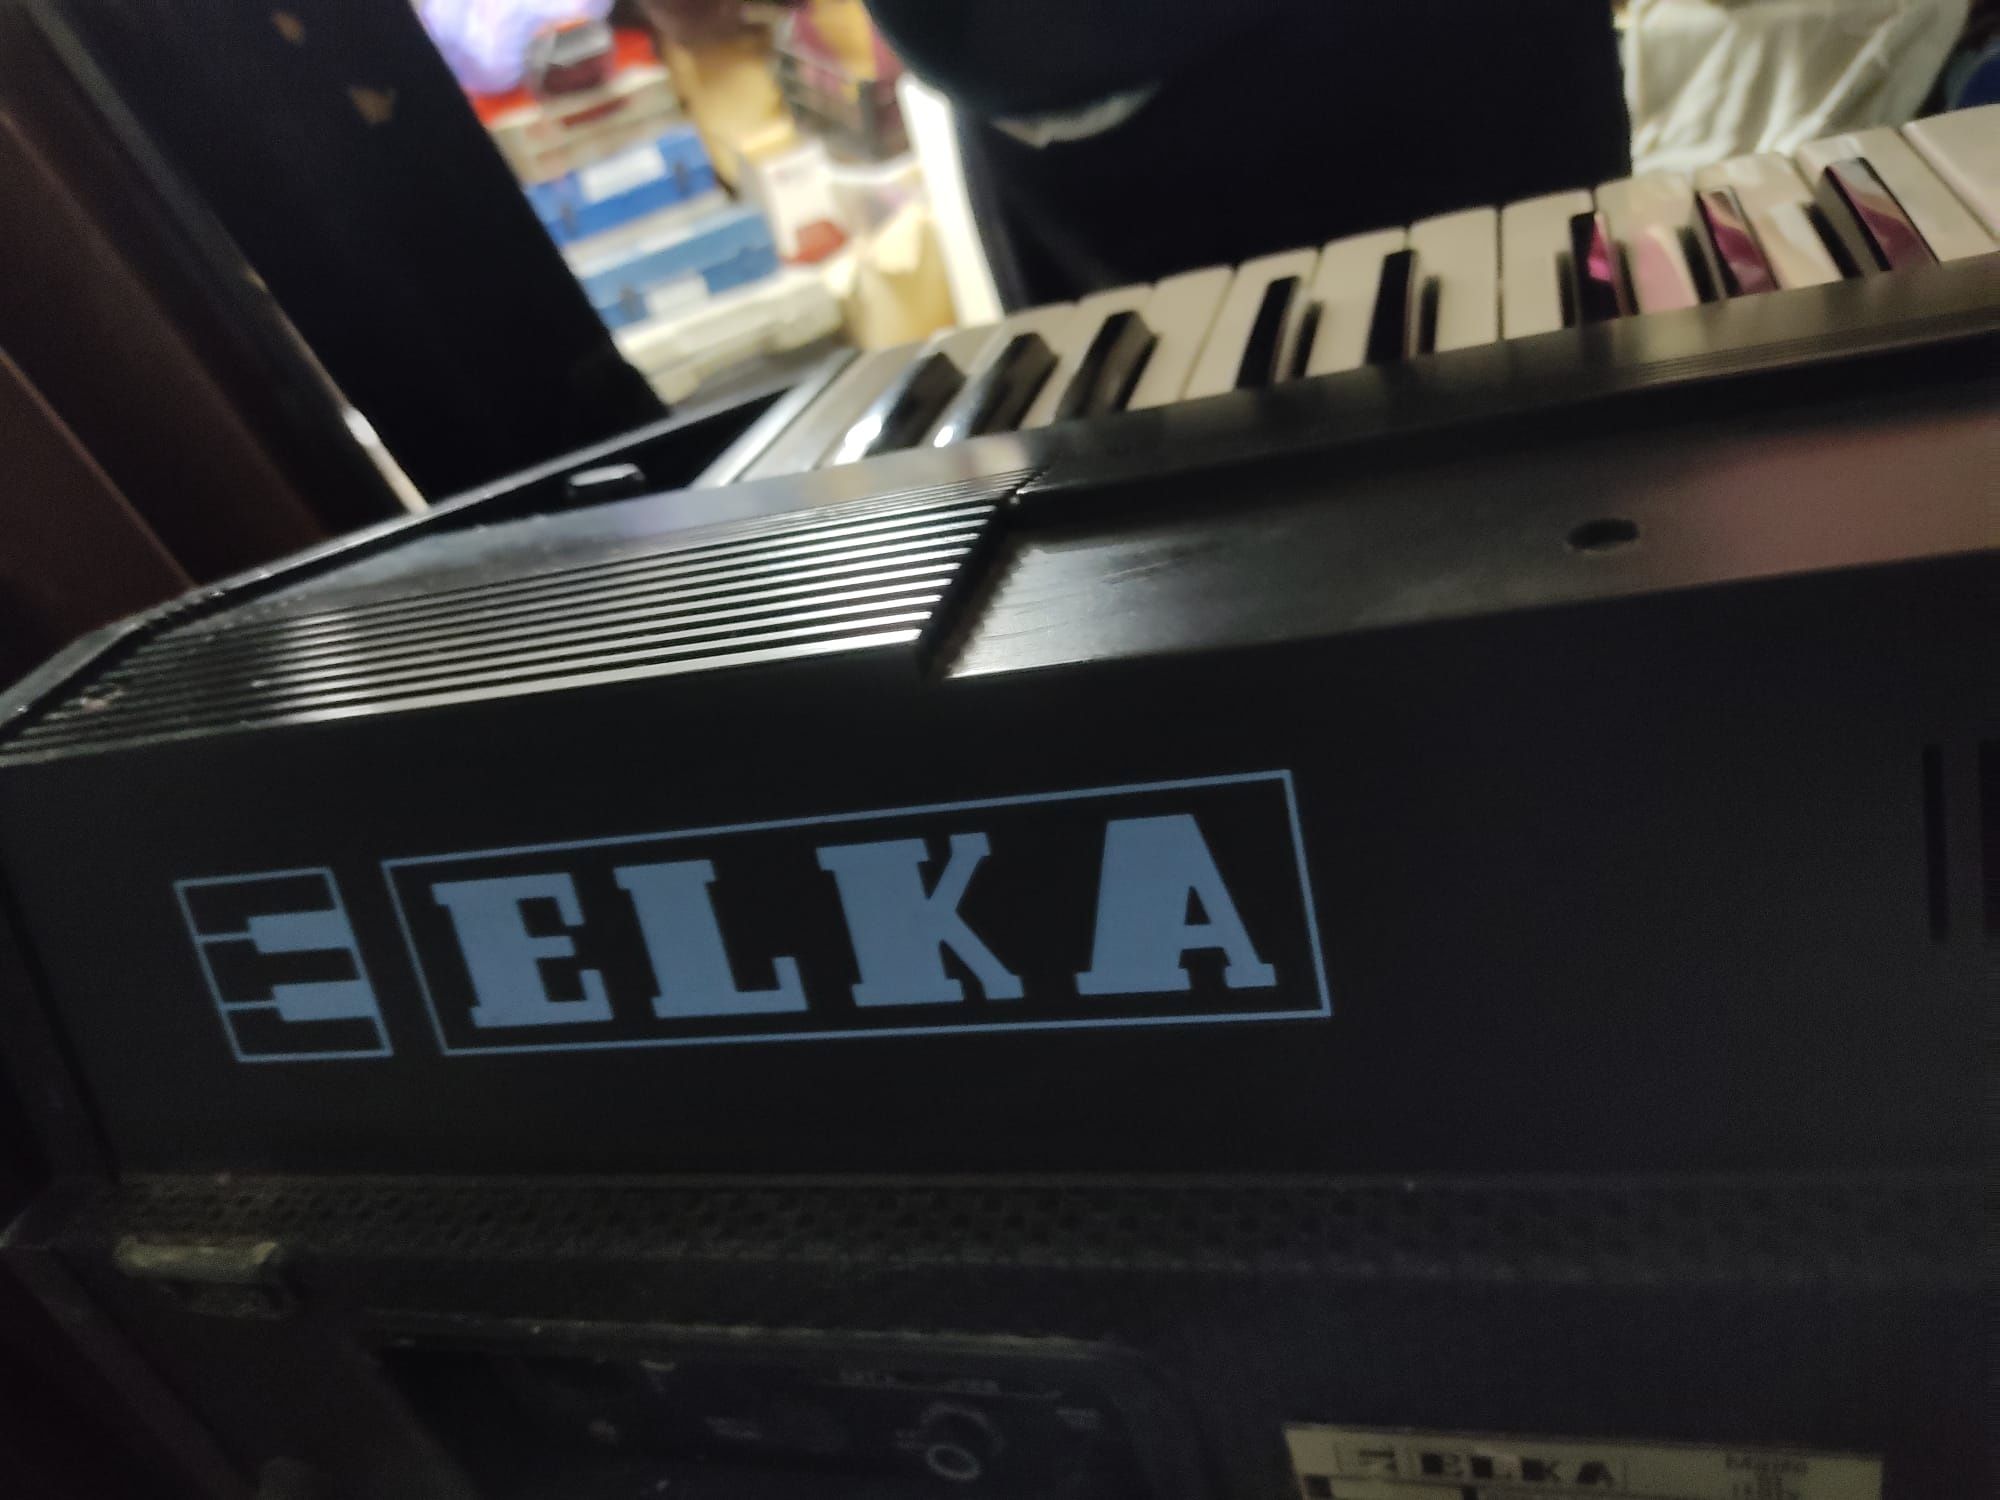 Órgão Elka x35 - dois teclados